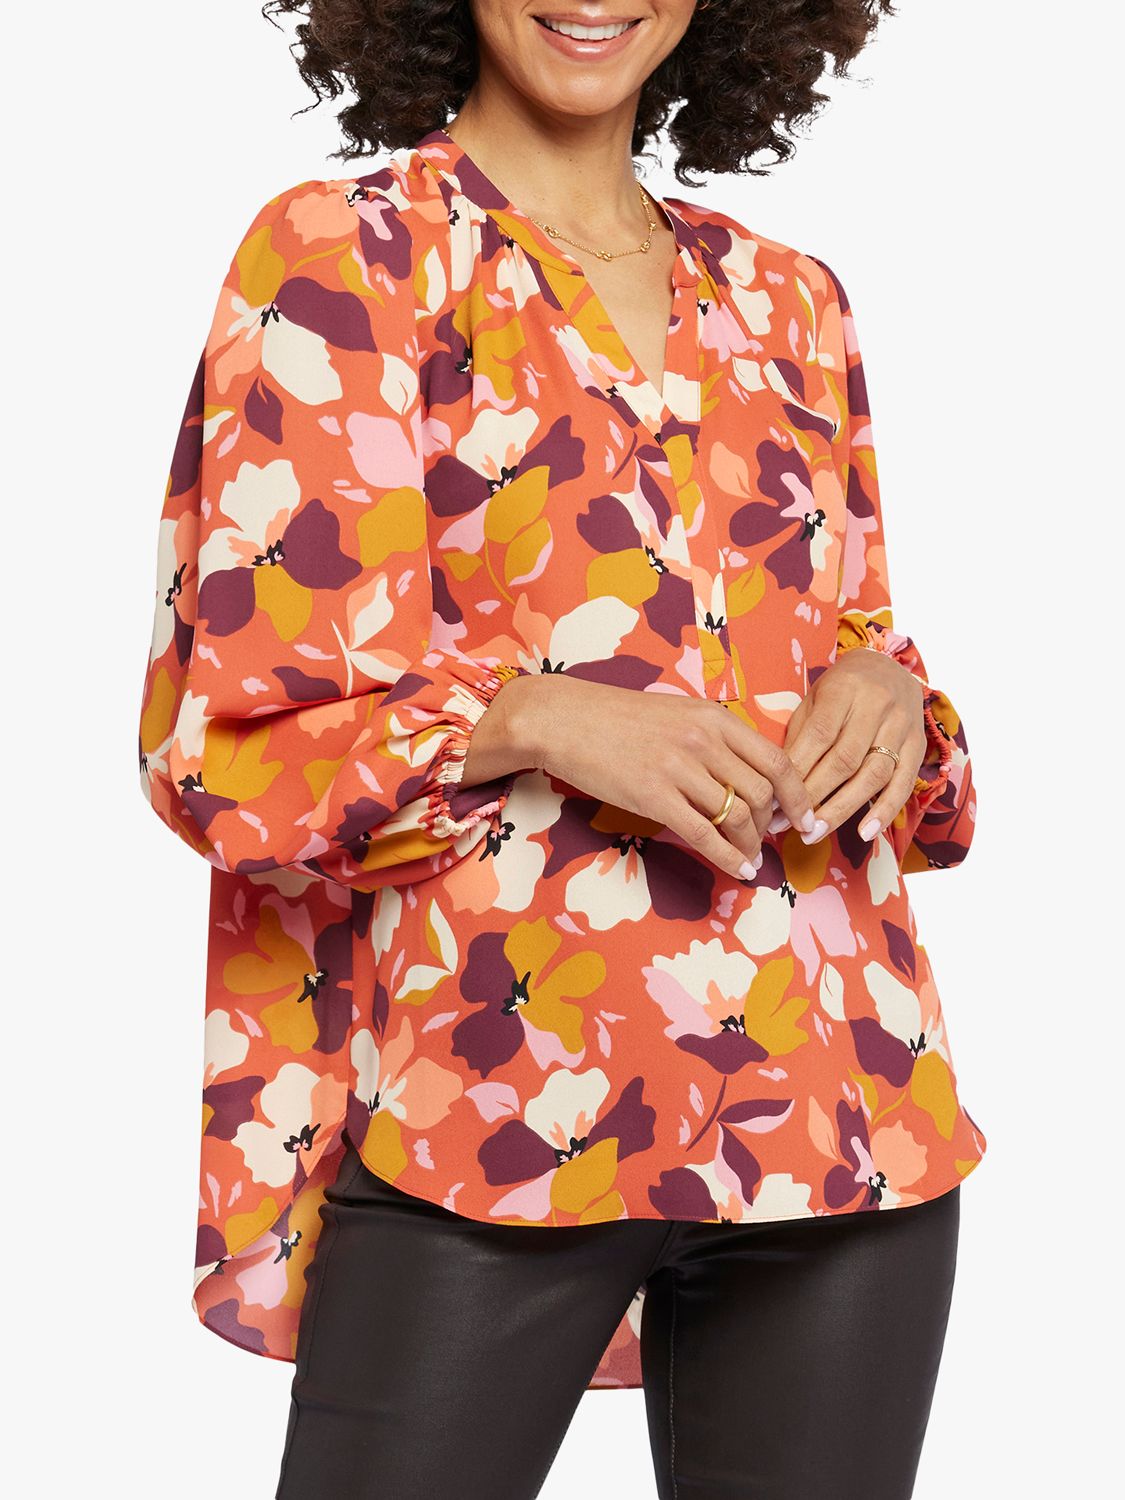 Топ-поповер с объемными рукавами NYDJ, пряник блузка из шитья с объемными рукавами